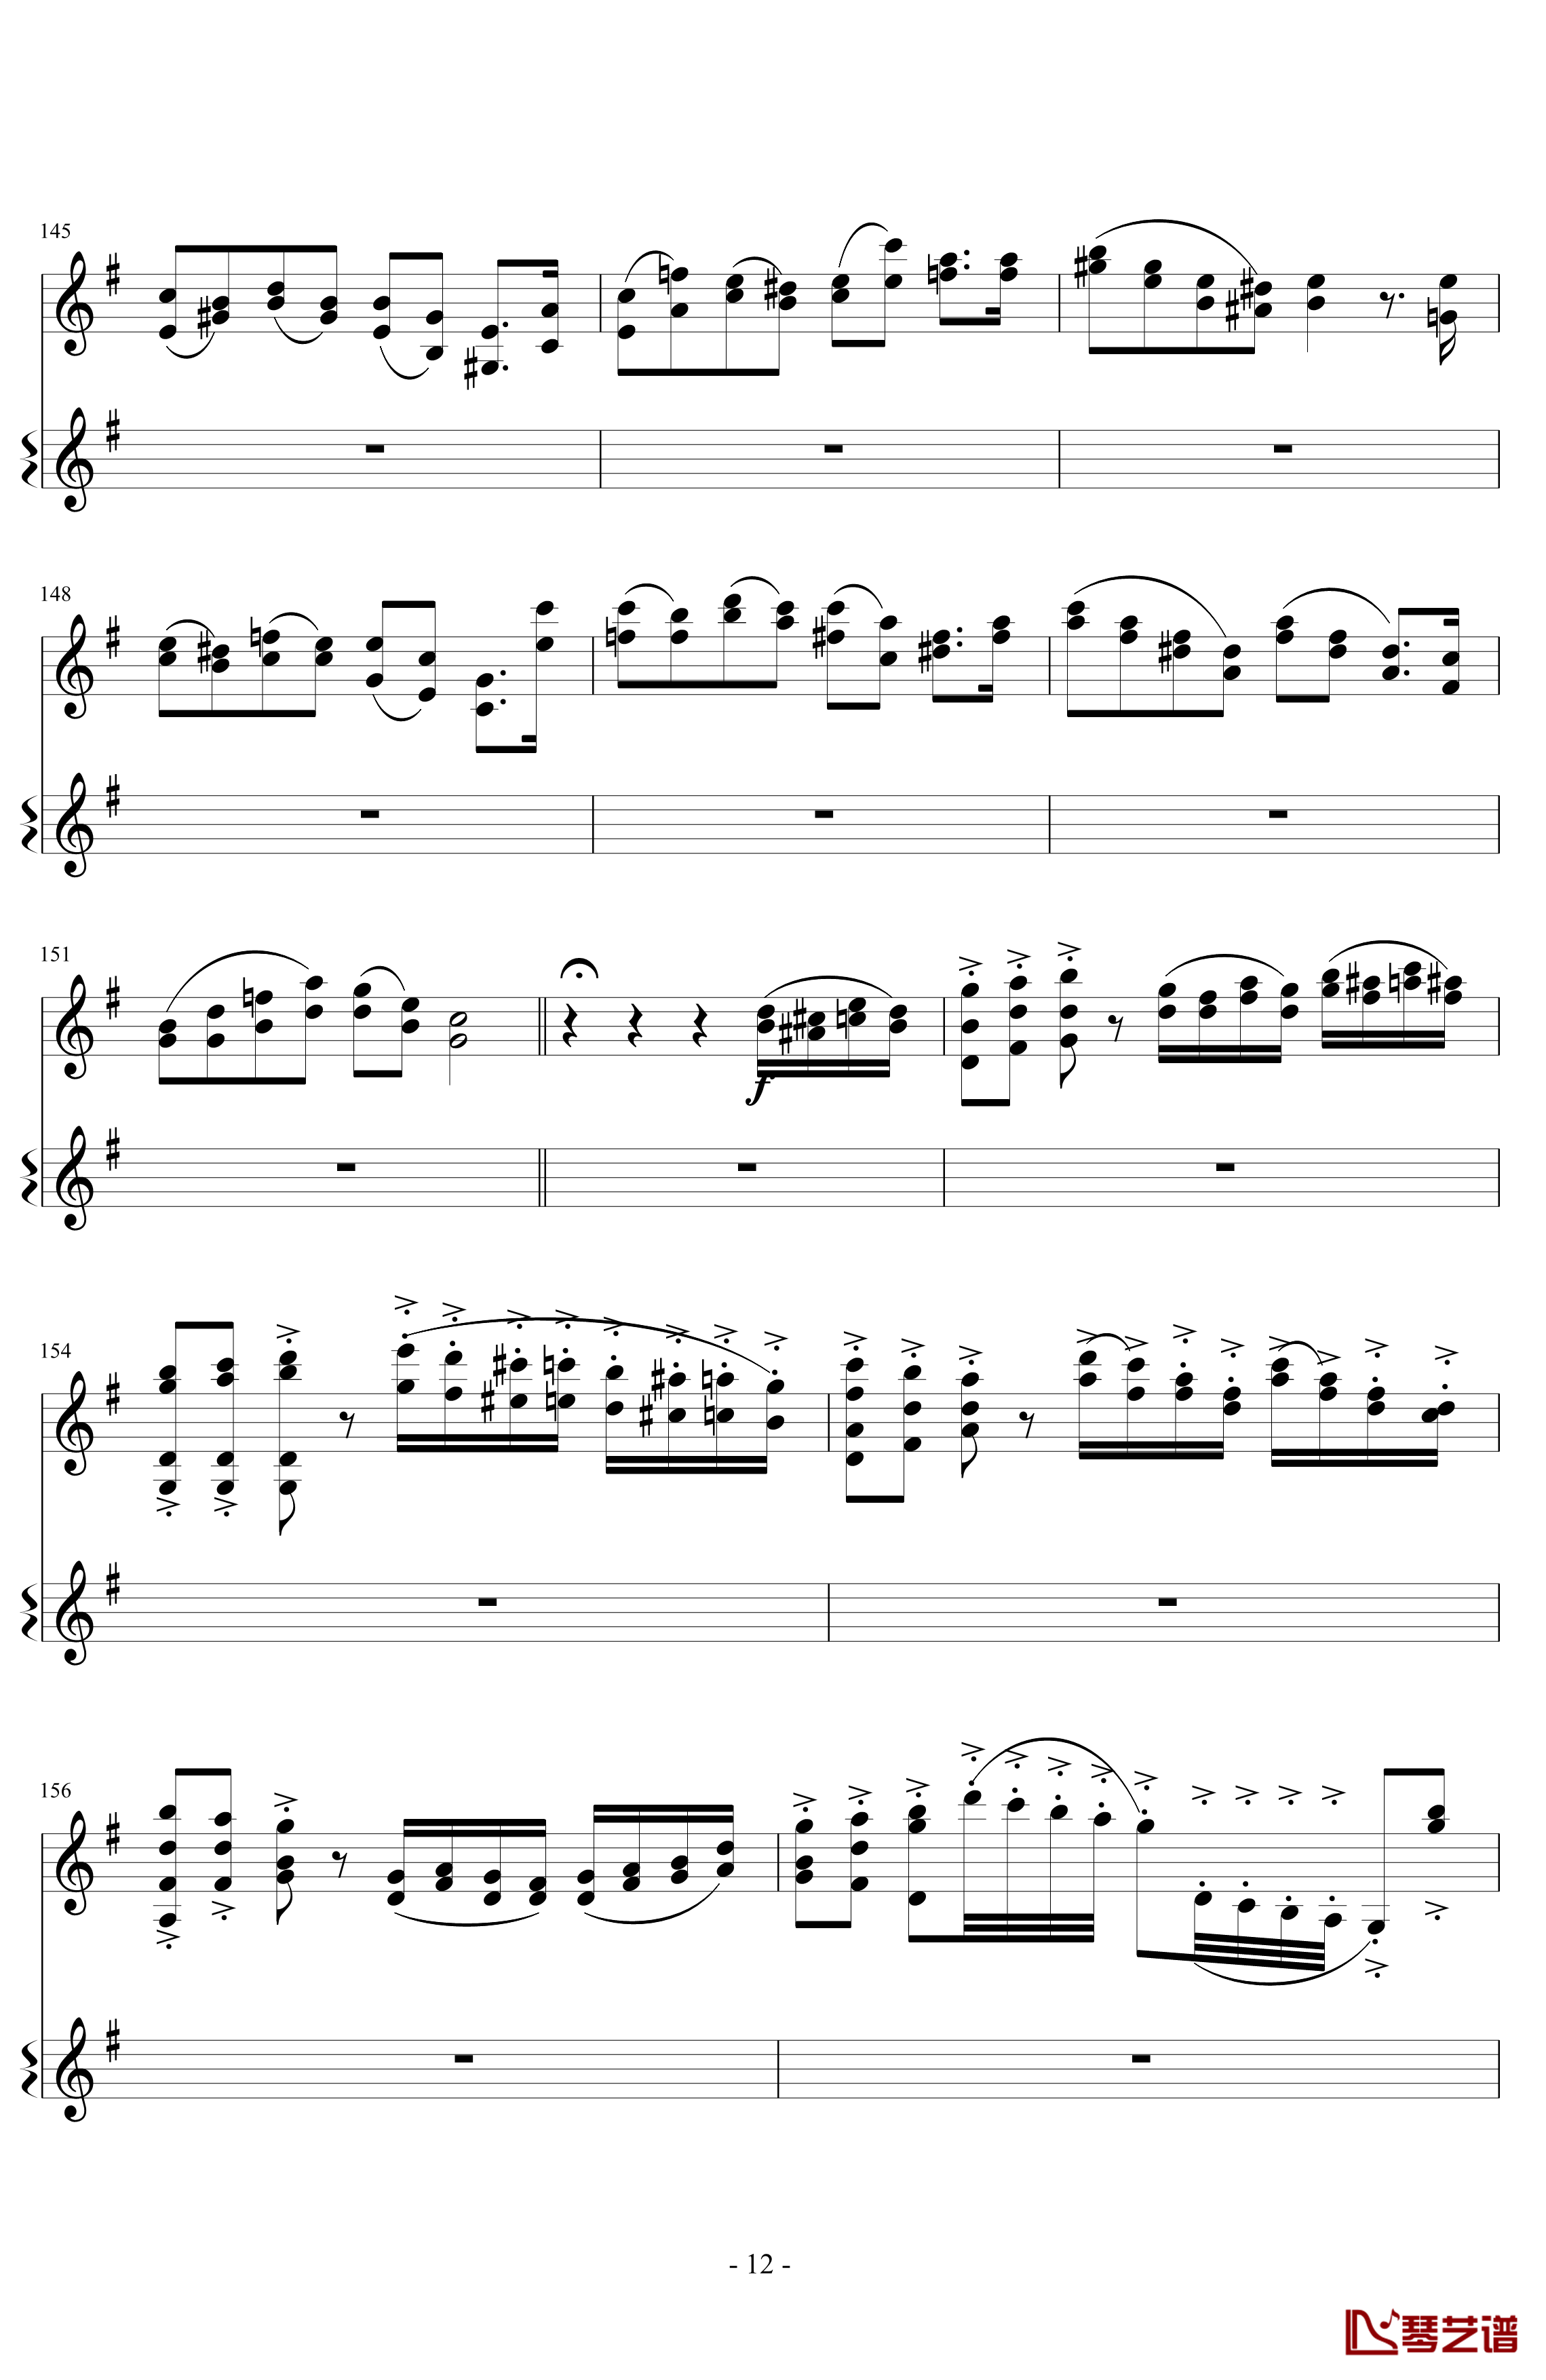 意大利国歌变奏曲钢琴谱-DXF12